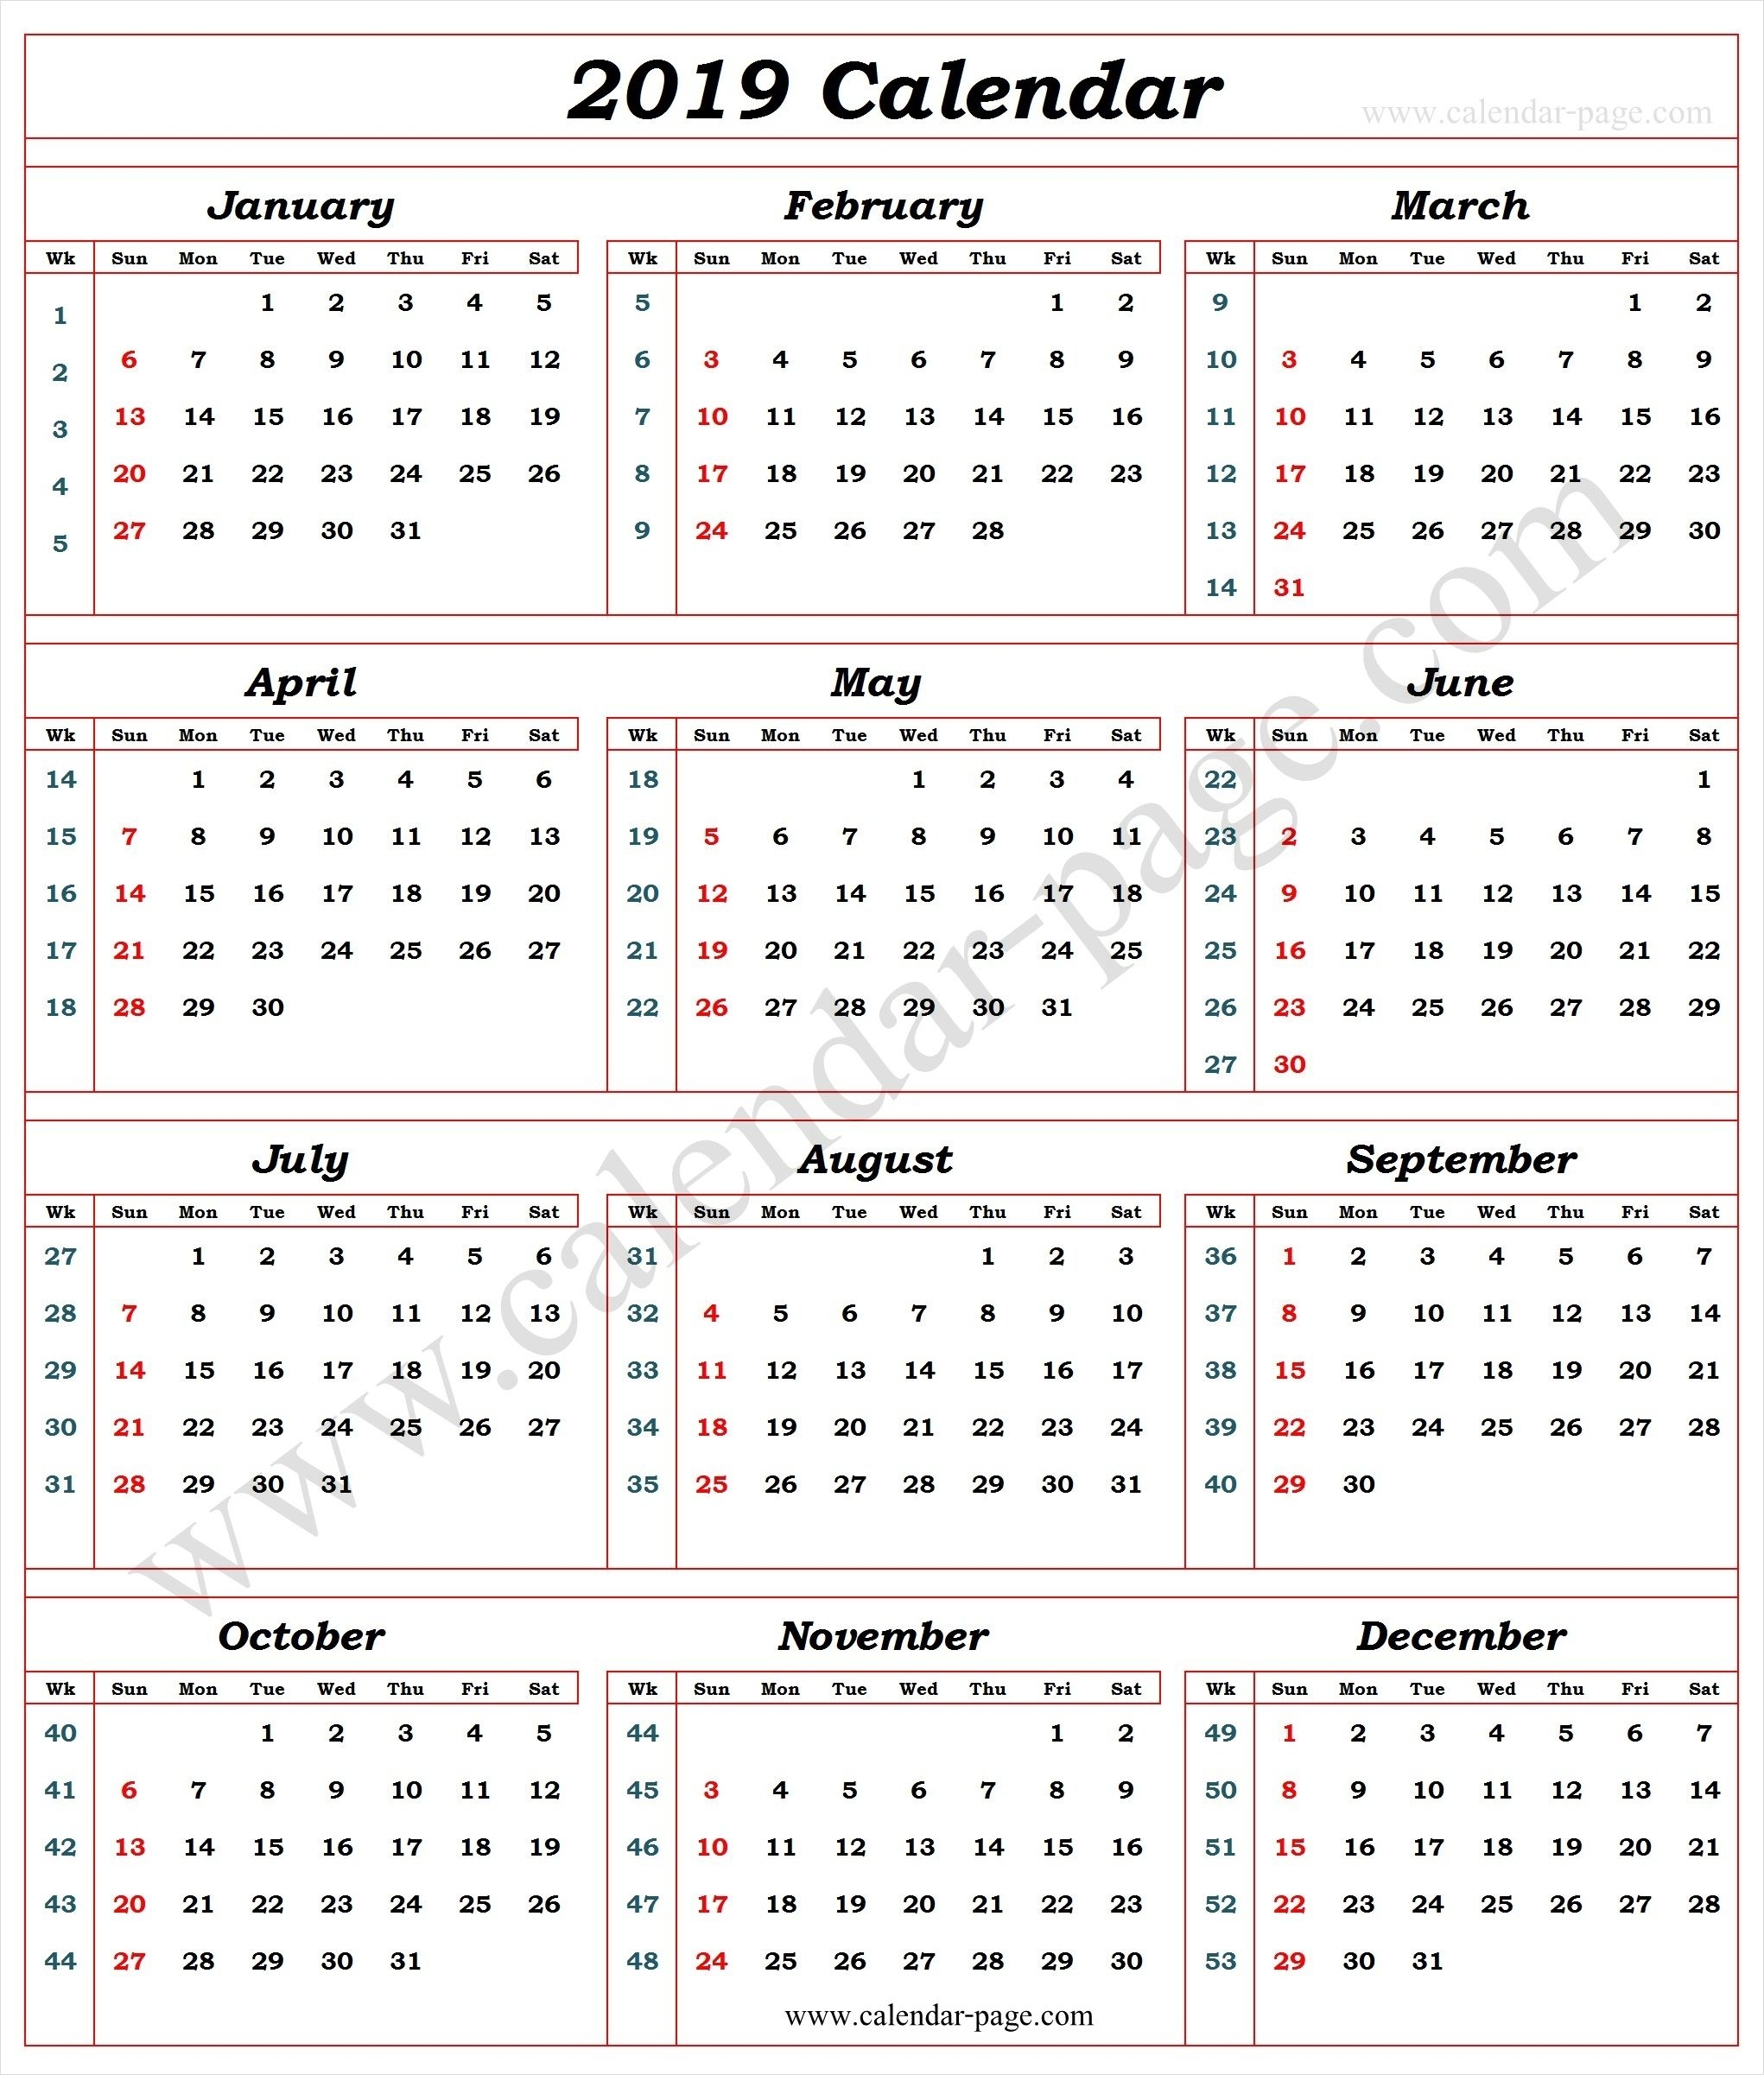 Calendar 2019 With Week Numbers | Calendar With Week Numbers